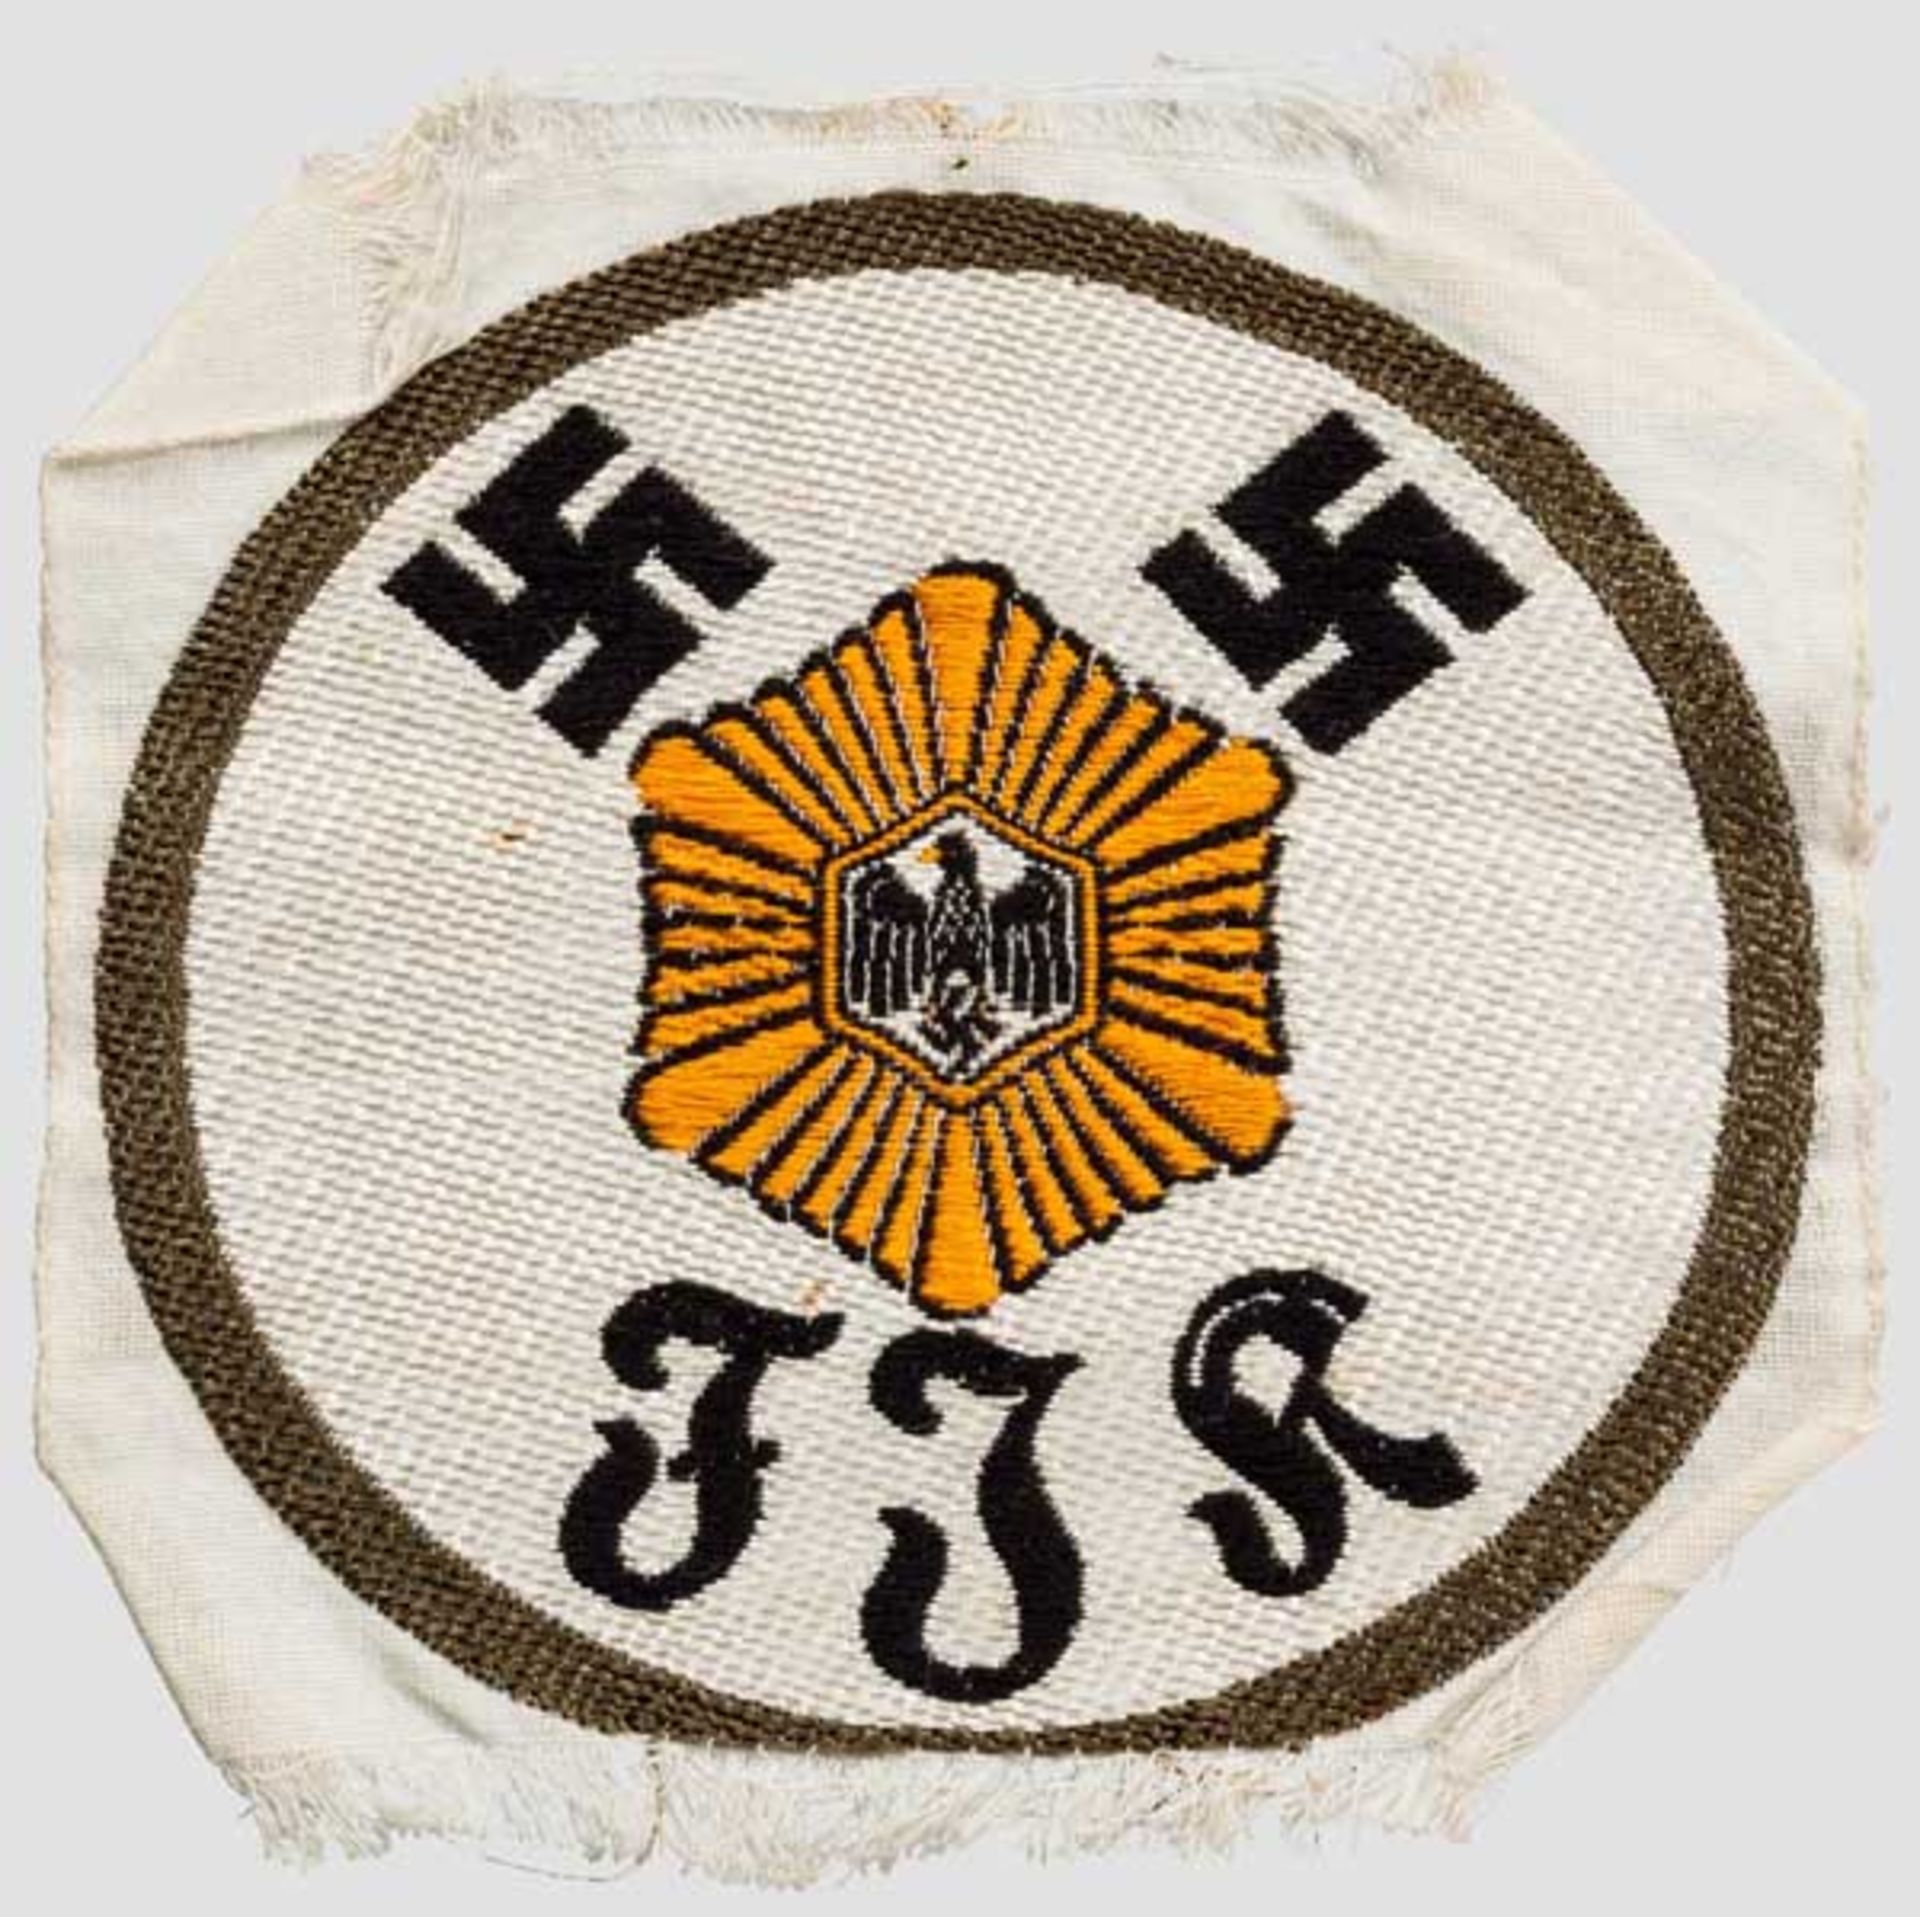 Sporthemdabzeichen für das SA-Feldjägerkorps Farbig gewebte Ausführung um 1933/34, mittig der